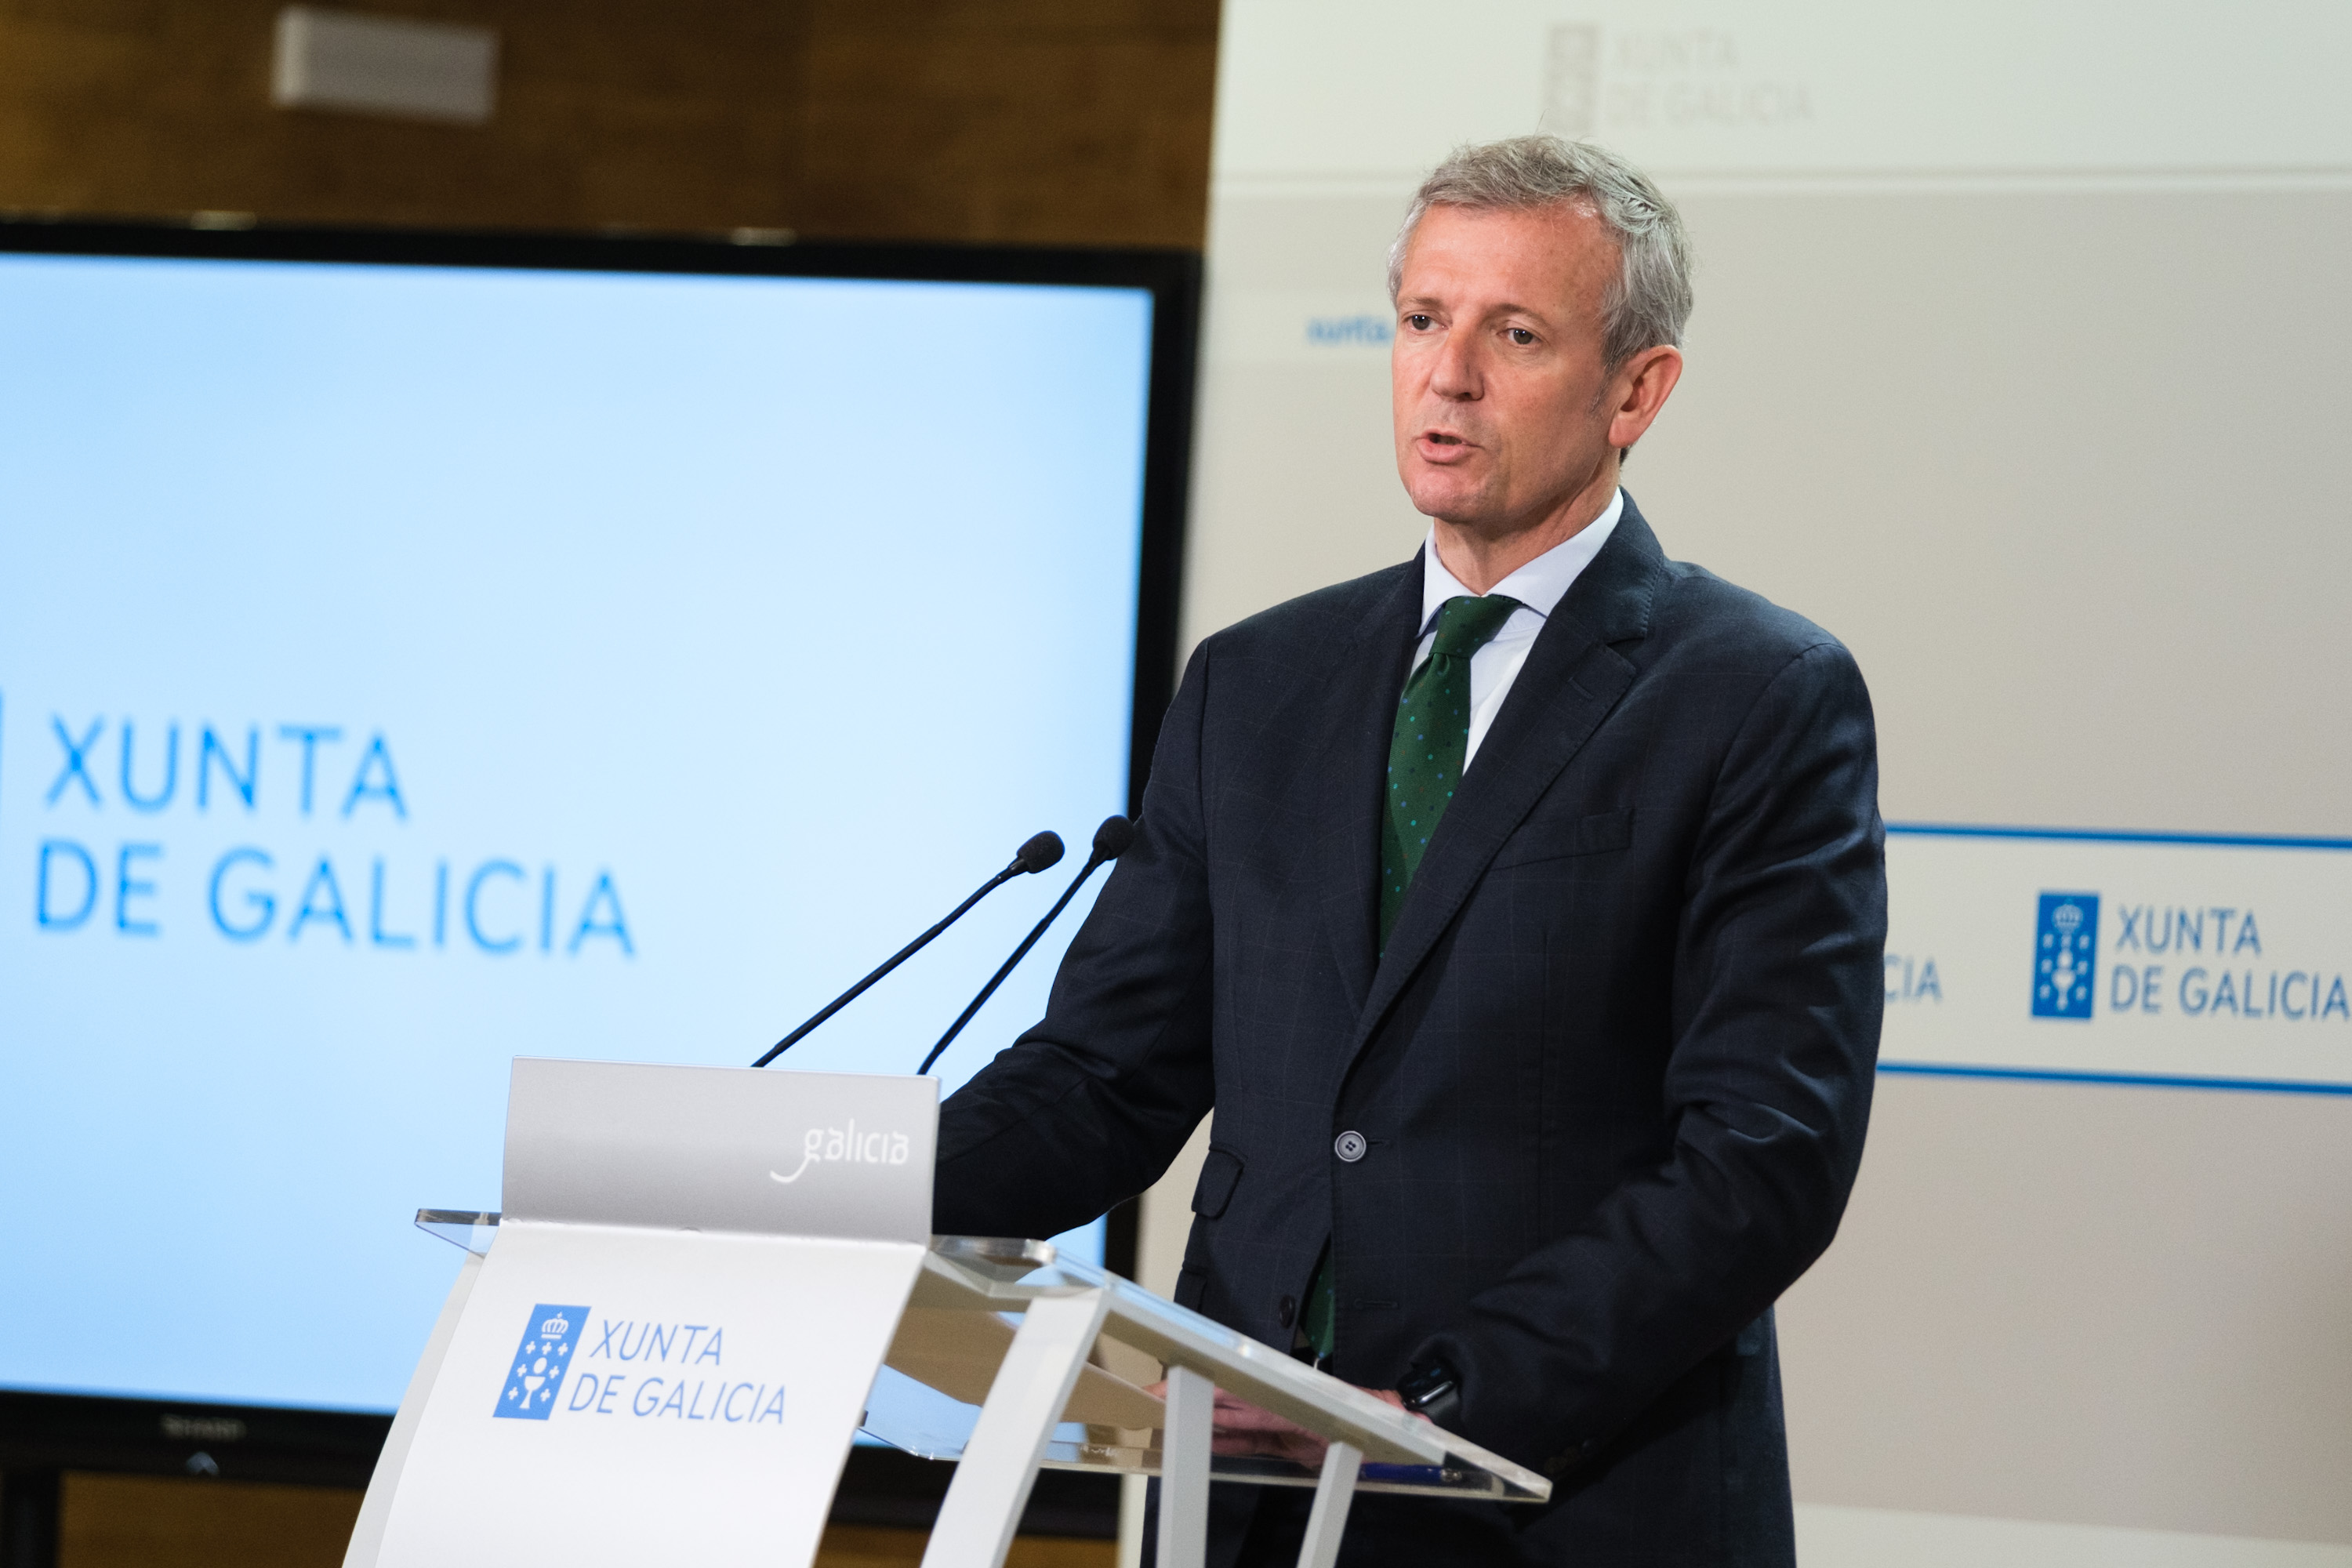 Image 1 of article Rueda anuncia que a Xunta aproba a Estratexia Galega de Mobilidade para garantir desprazamentos sustentables co apoio da innovación tecnolóxica